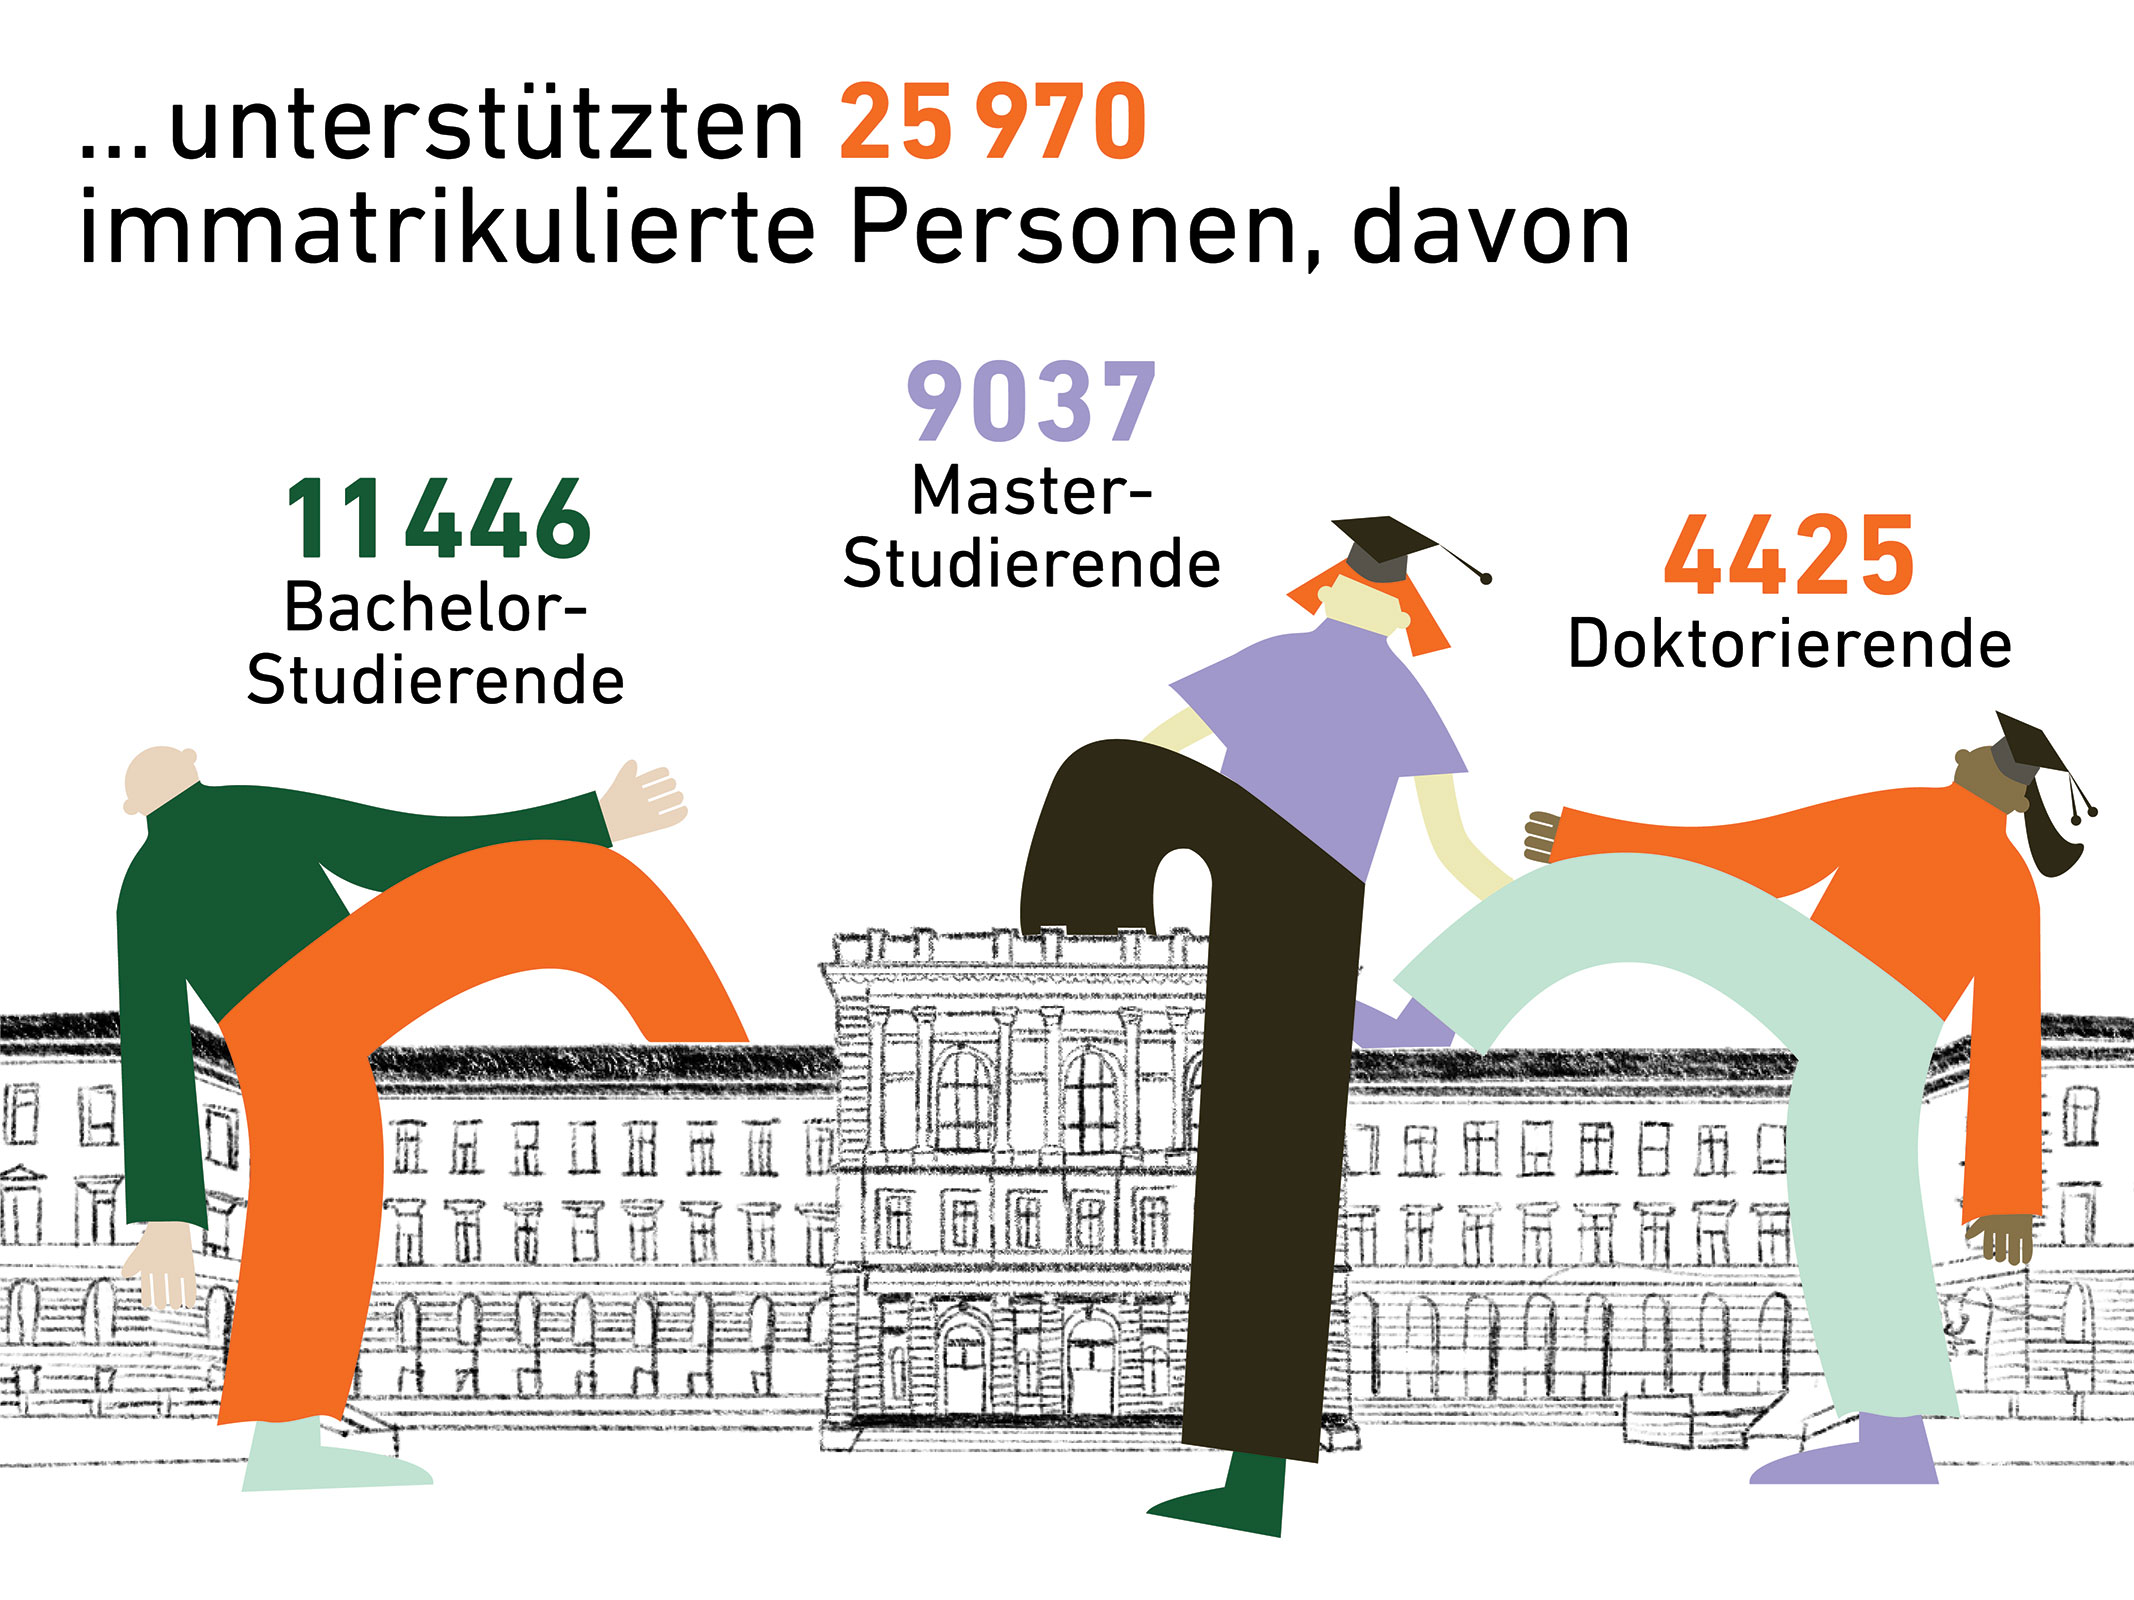 Die AkD unterstützten 25'970 immatrikulierte Personen, davon 11'446 Bachelor-Studierende, 9'037 Master-Studierende und 4'425 Doktorierende.